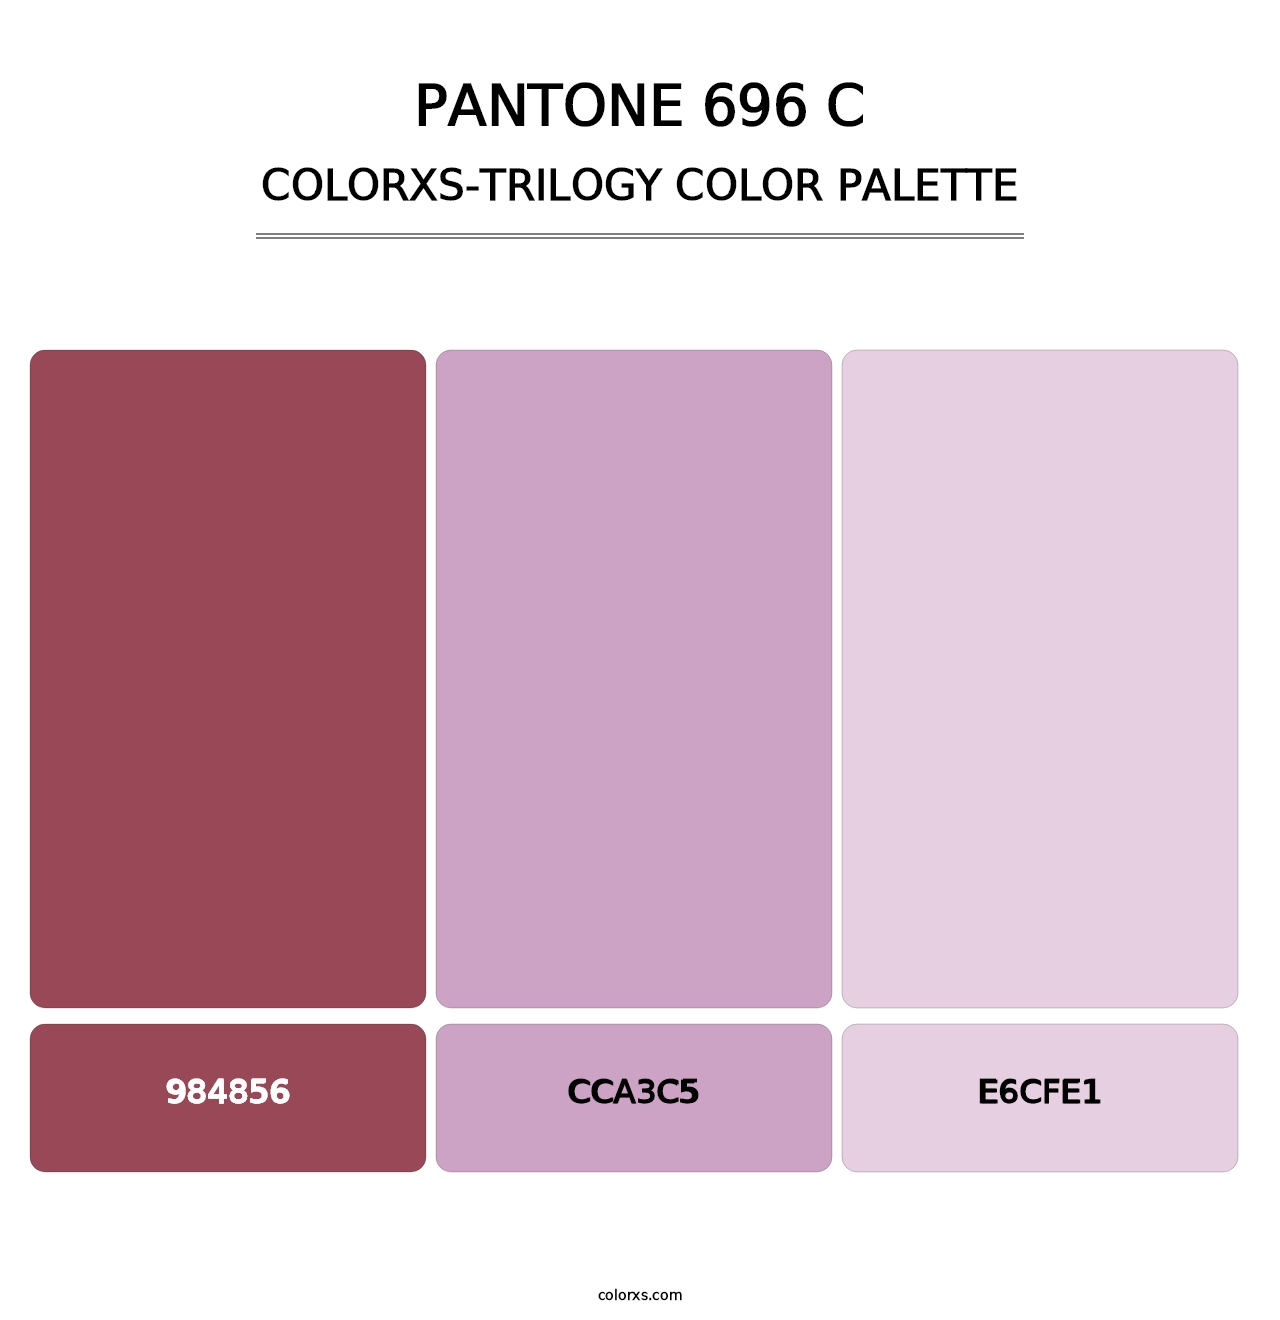 PANTONE 696 C - Colorxs Trilogy Palette